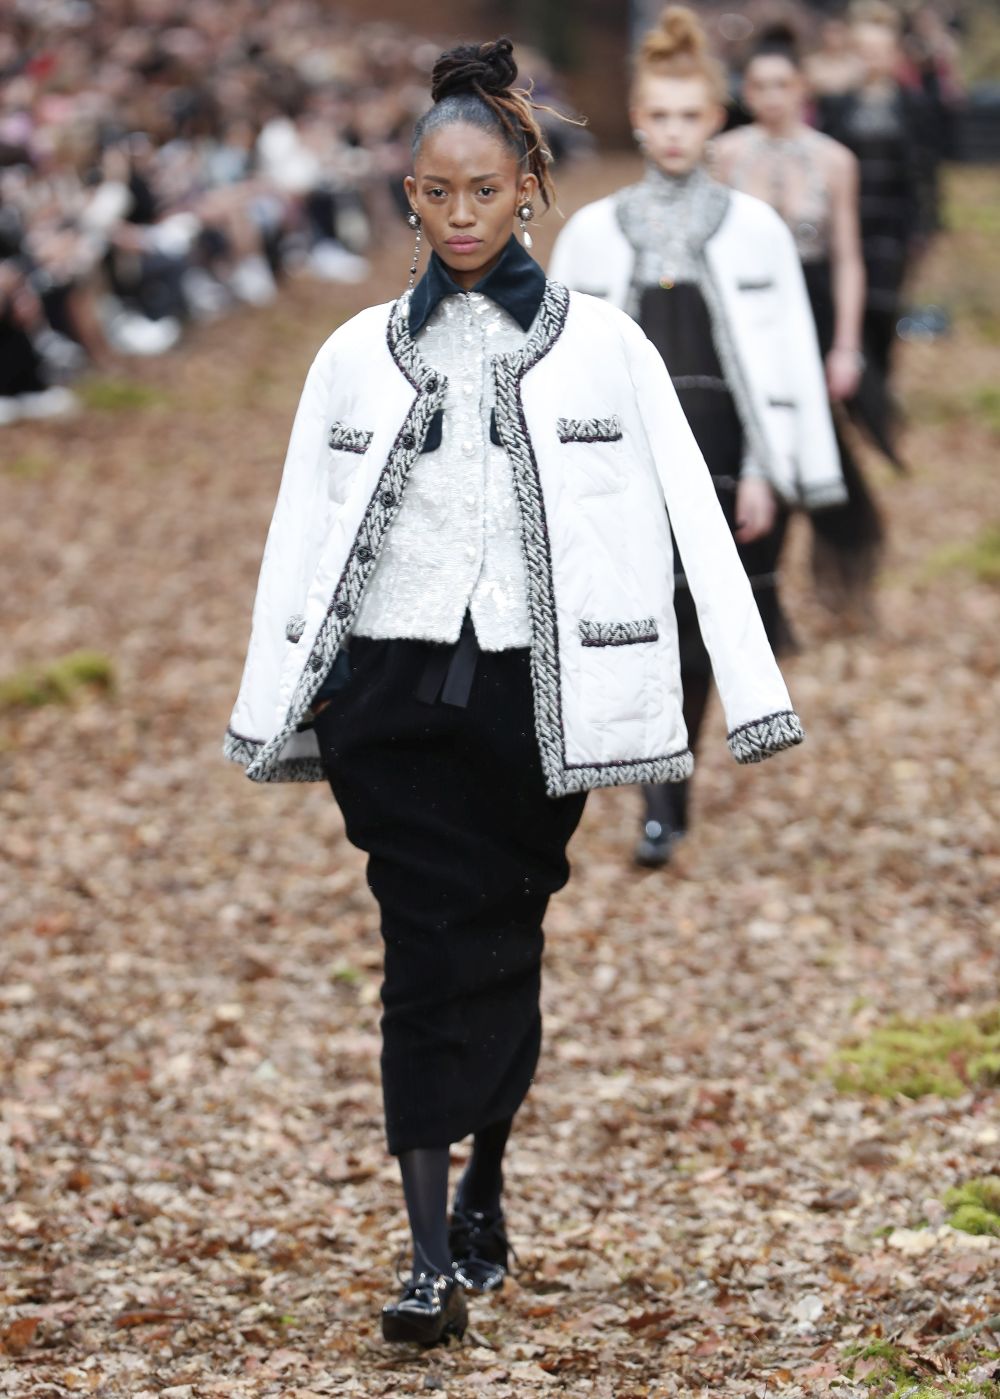 <strong>Карл Лагерфелд </strong>облече манекенките в<strong> дрехи с щамповани листа </strong>за ревюто, което<strong> възпя есента насред мъглива гора в Гран пале в Париж.</strong><br />
 <br />
В колекцията есен/зима, представена през последния ден на<strong> Парижката седмица на модата</strong>, има някои доста непрактични облекла за разходка сред природата, като златисти ботушки или черната рокличка. Престижната френска модна къща обаче предложи и някои удобни и топли модели - от ватирани панталони и кожени пончо до палта с пера по маншетите.<br />
 <br />
Характерните костюми от туид през следващата зима ще са с по-дълги тесни поли. Най-впечатляващи бяха палтата - дълги, с щамповани листа в комбинация със синьо и розово, или зелено и оранжево.<br />
 